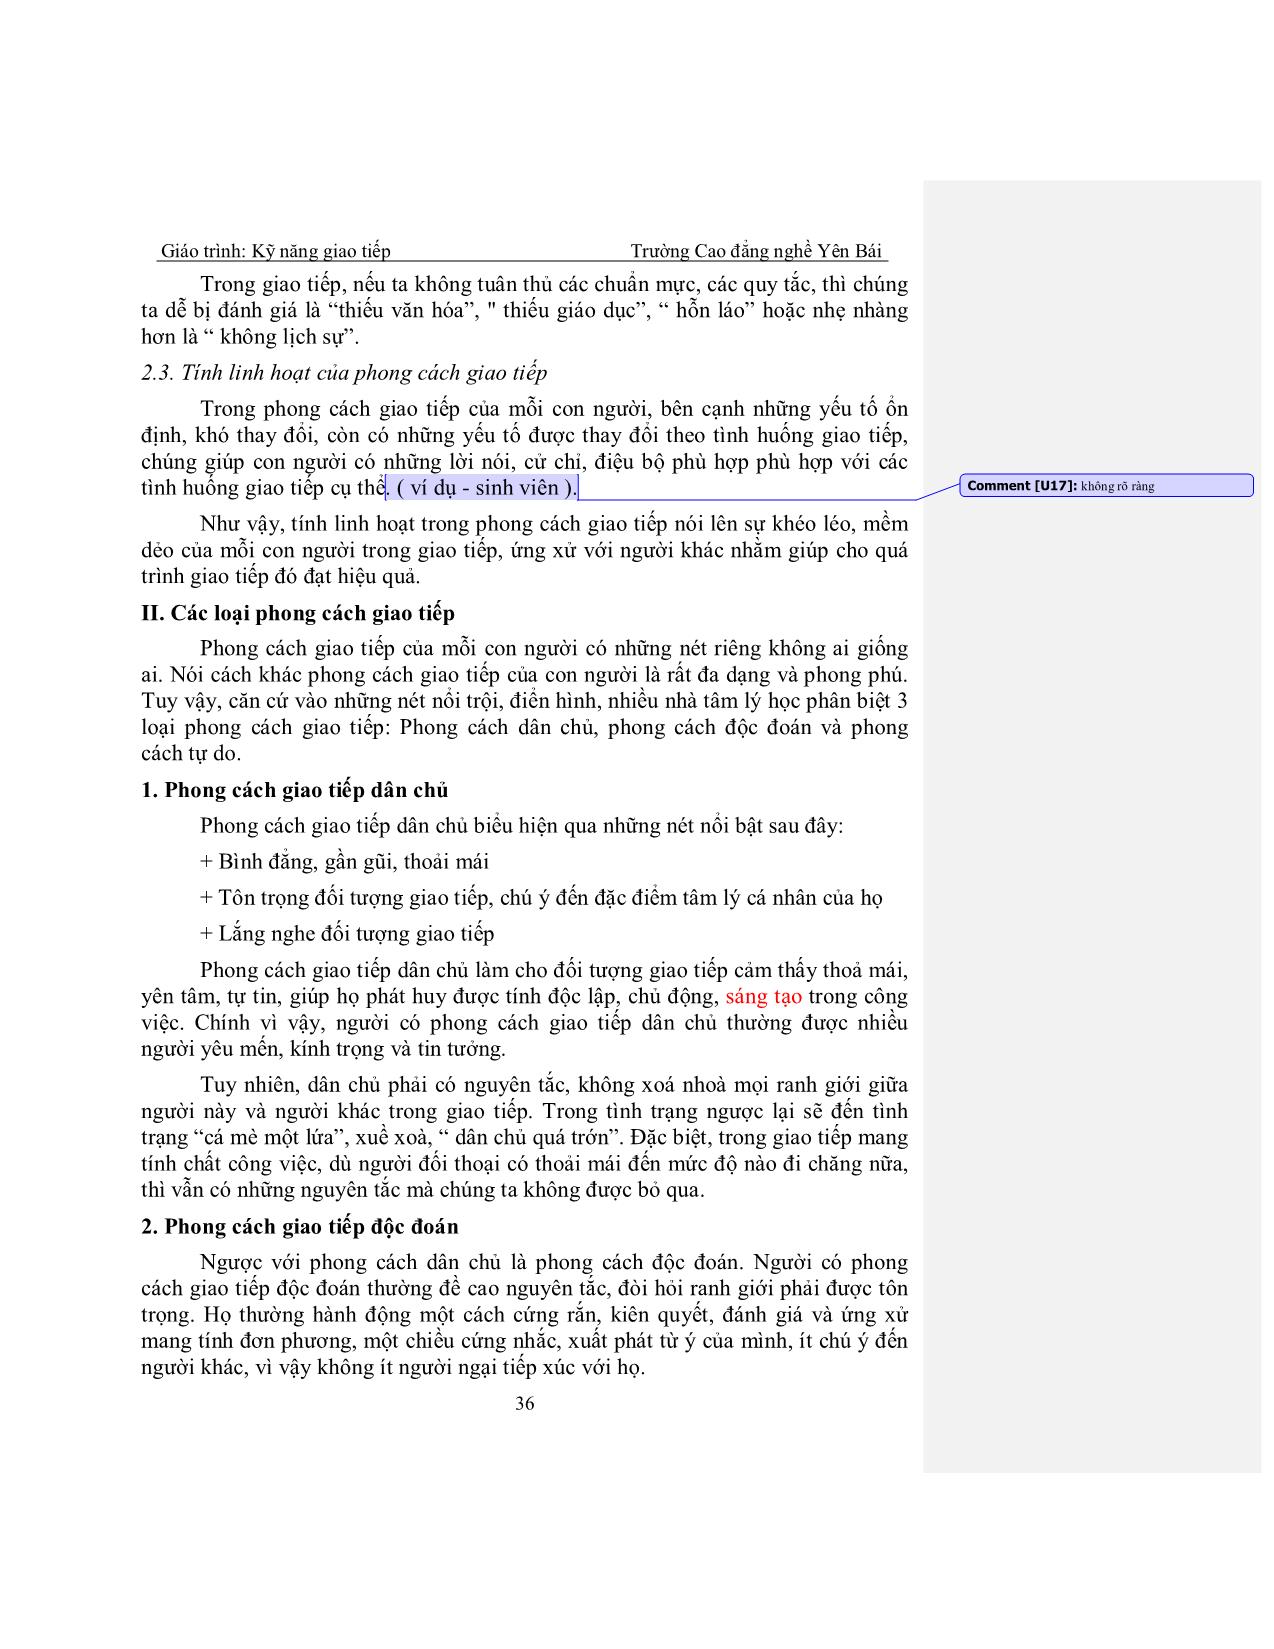 Giáo trình Kỹ năng giao tiếp (Phần 2) trang 2